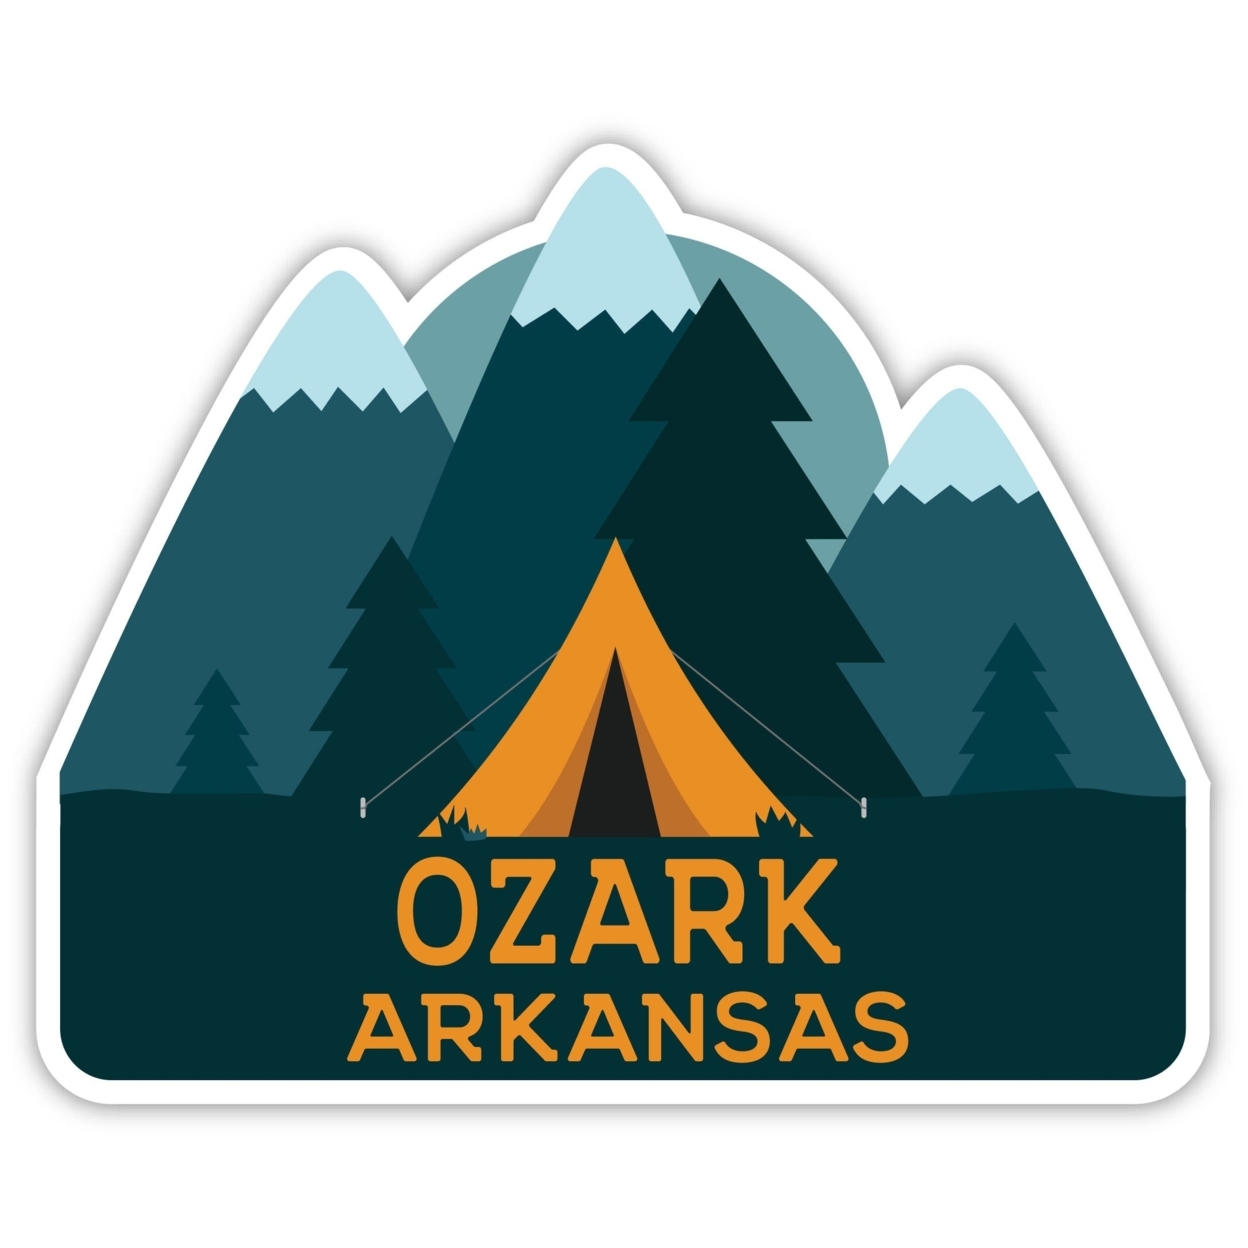 Ozark Arkansas Souvenir Decorative Stickers (Choose Theme And Size) - Single Unit, 4-Inch, Tent